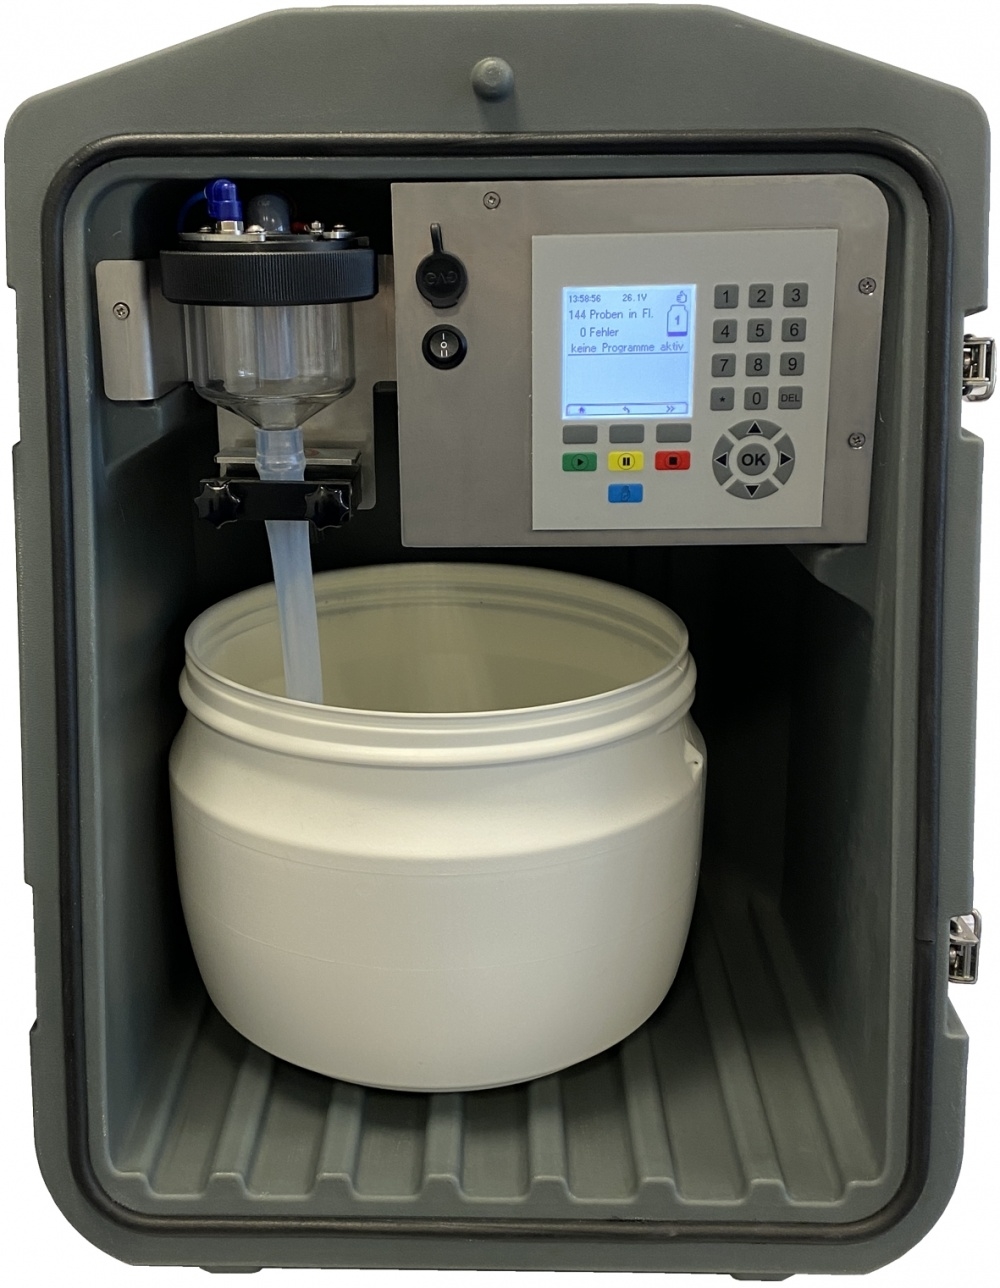 Visuel de AQUACOMPACT - PRÉLEVEUR PORTABLE ISOTHERME Echantillonneur automatique prélèvement d'eau